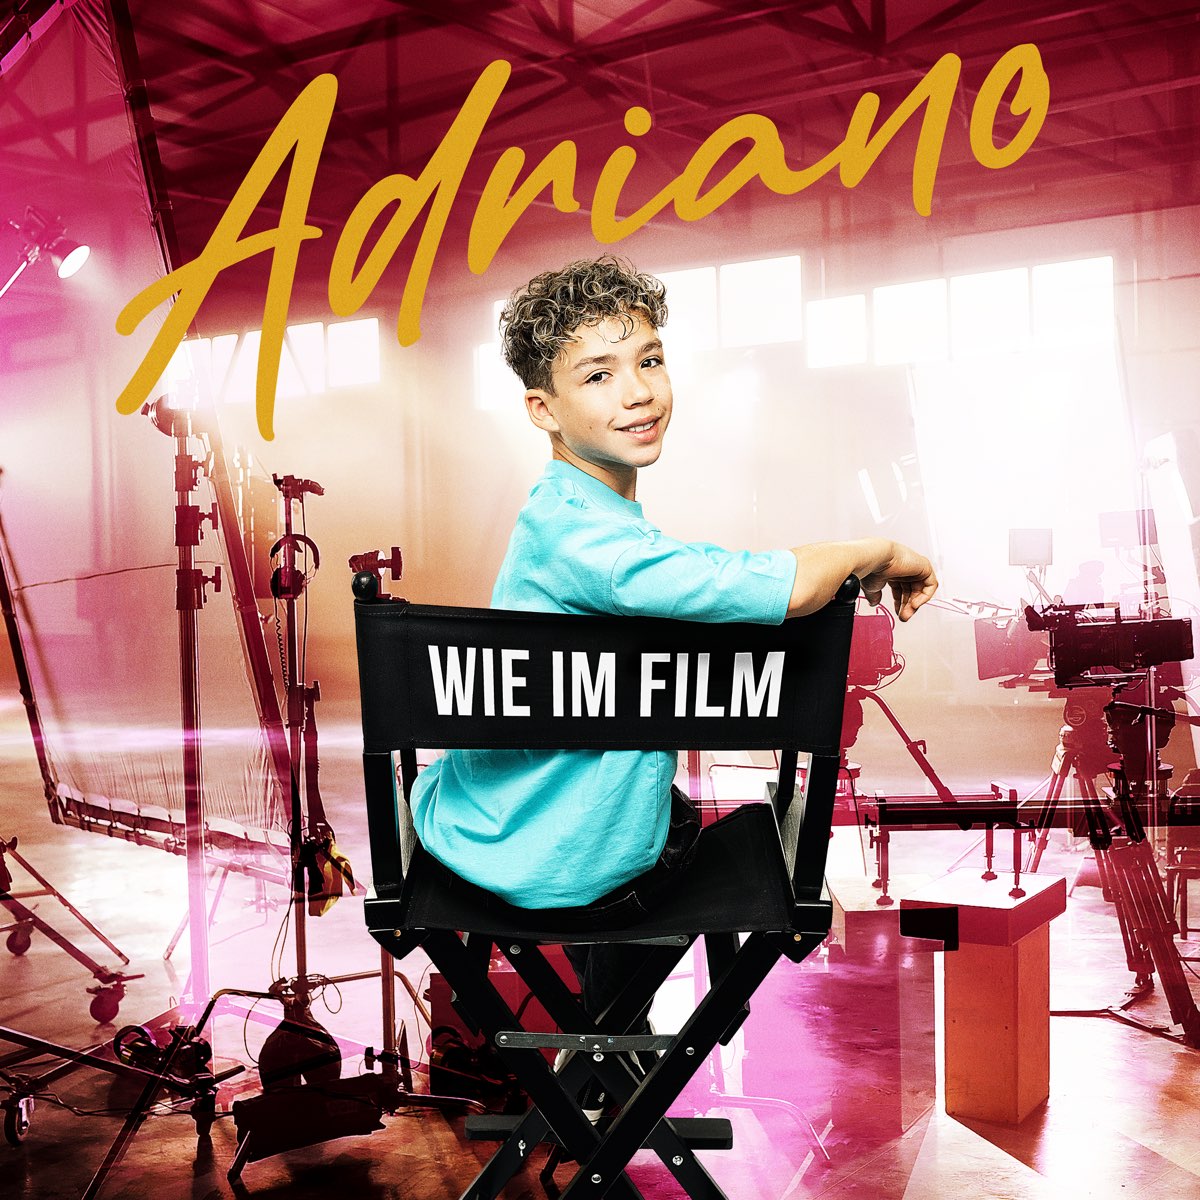 Adriano Wie im film